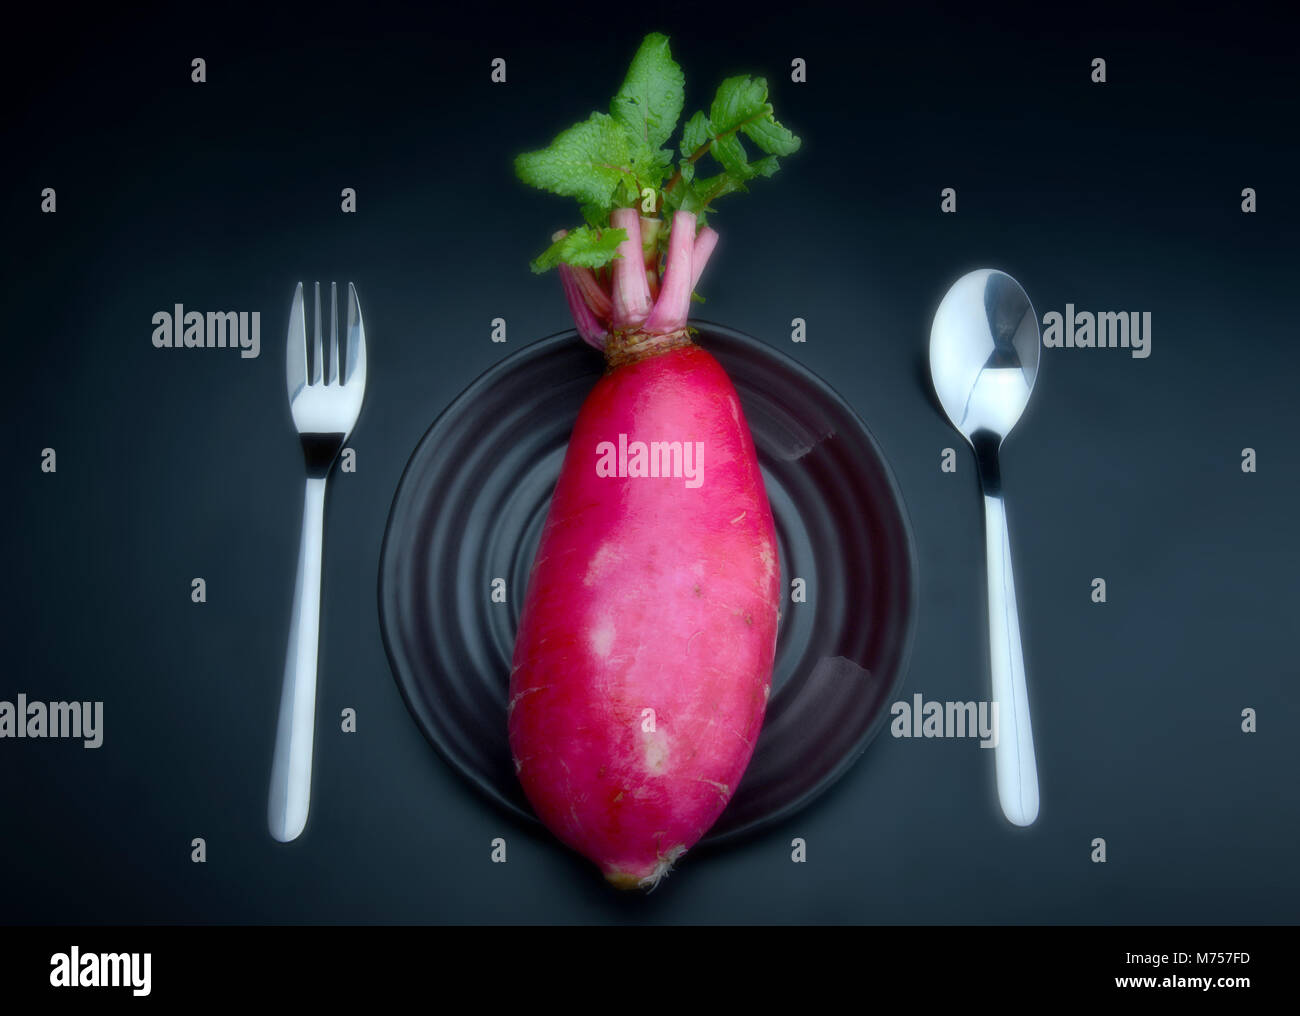 Concept est je suis végétarienne dieter par manger les radis roses fraîches et appliquée et peu souple photo Blur Banque D'Images